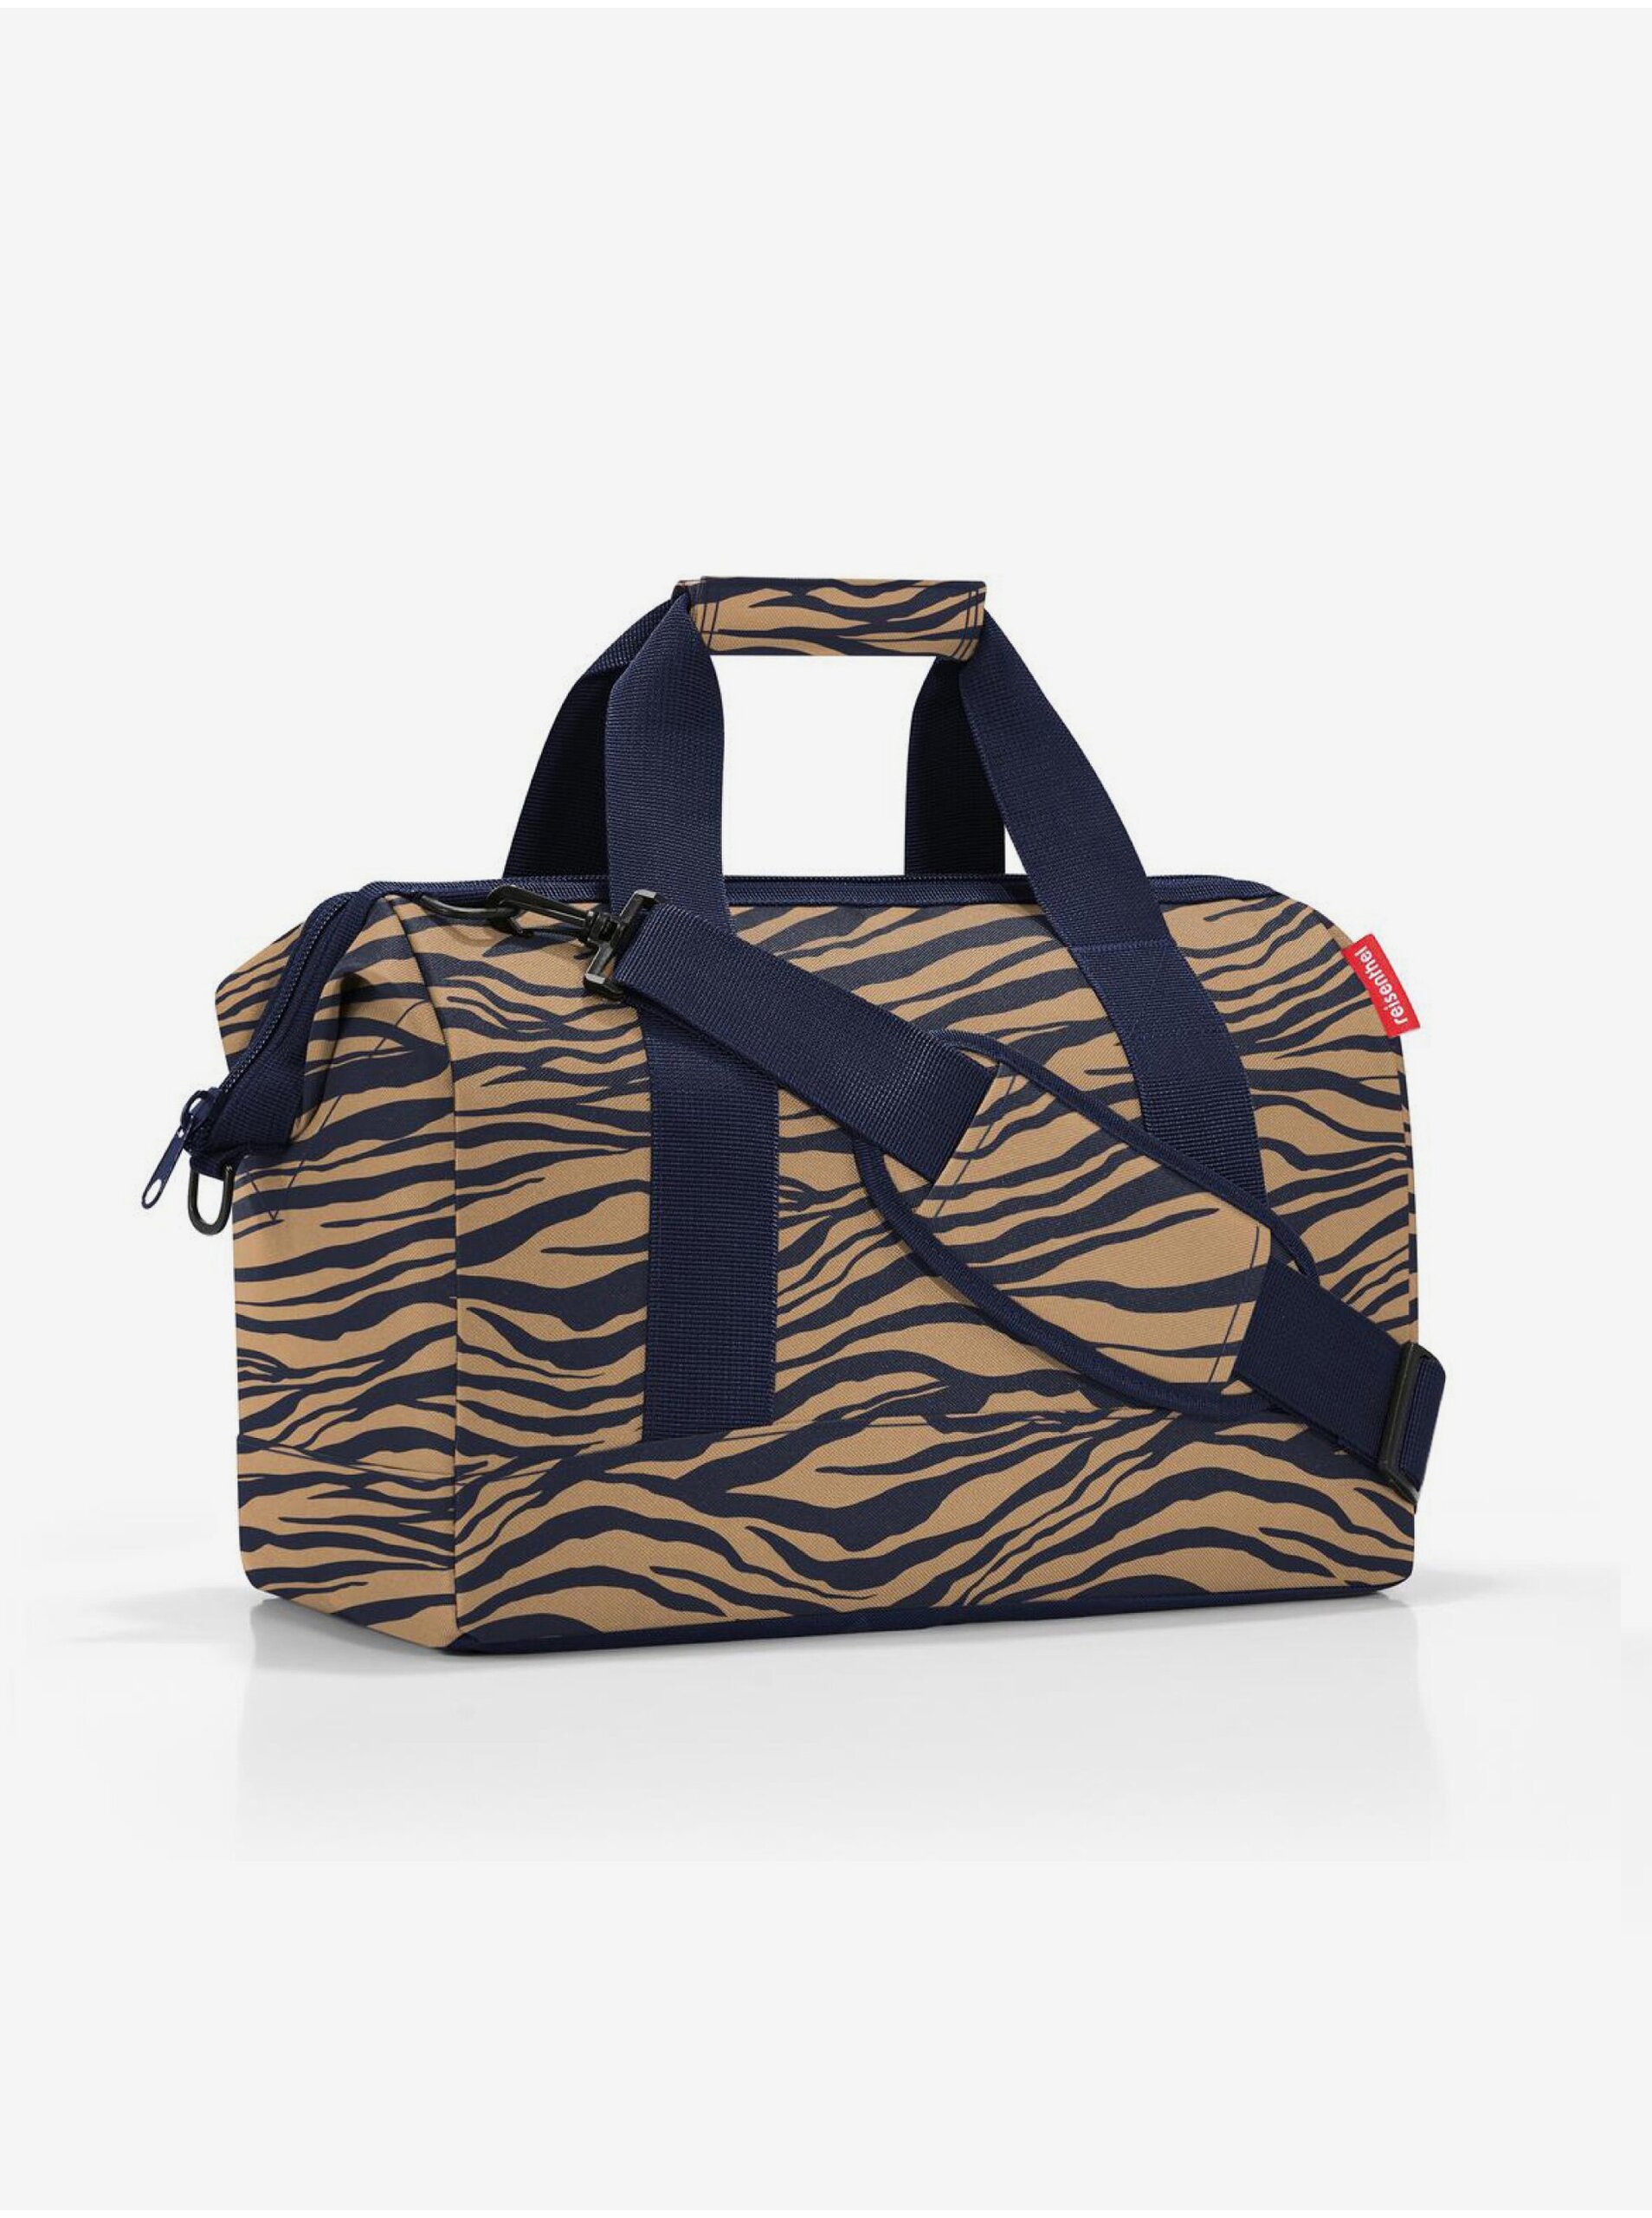 E-shop Modro-hnědá dámská cestovní taška se zvířecím vzorem Reisenthel Allrounder M Sumatra